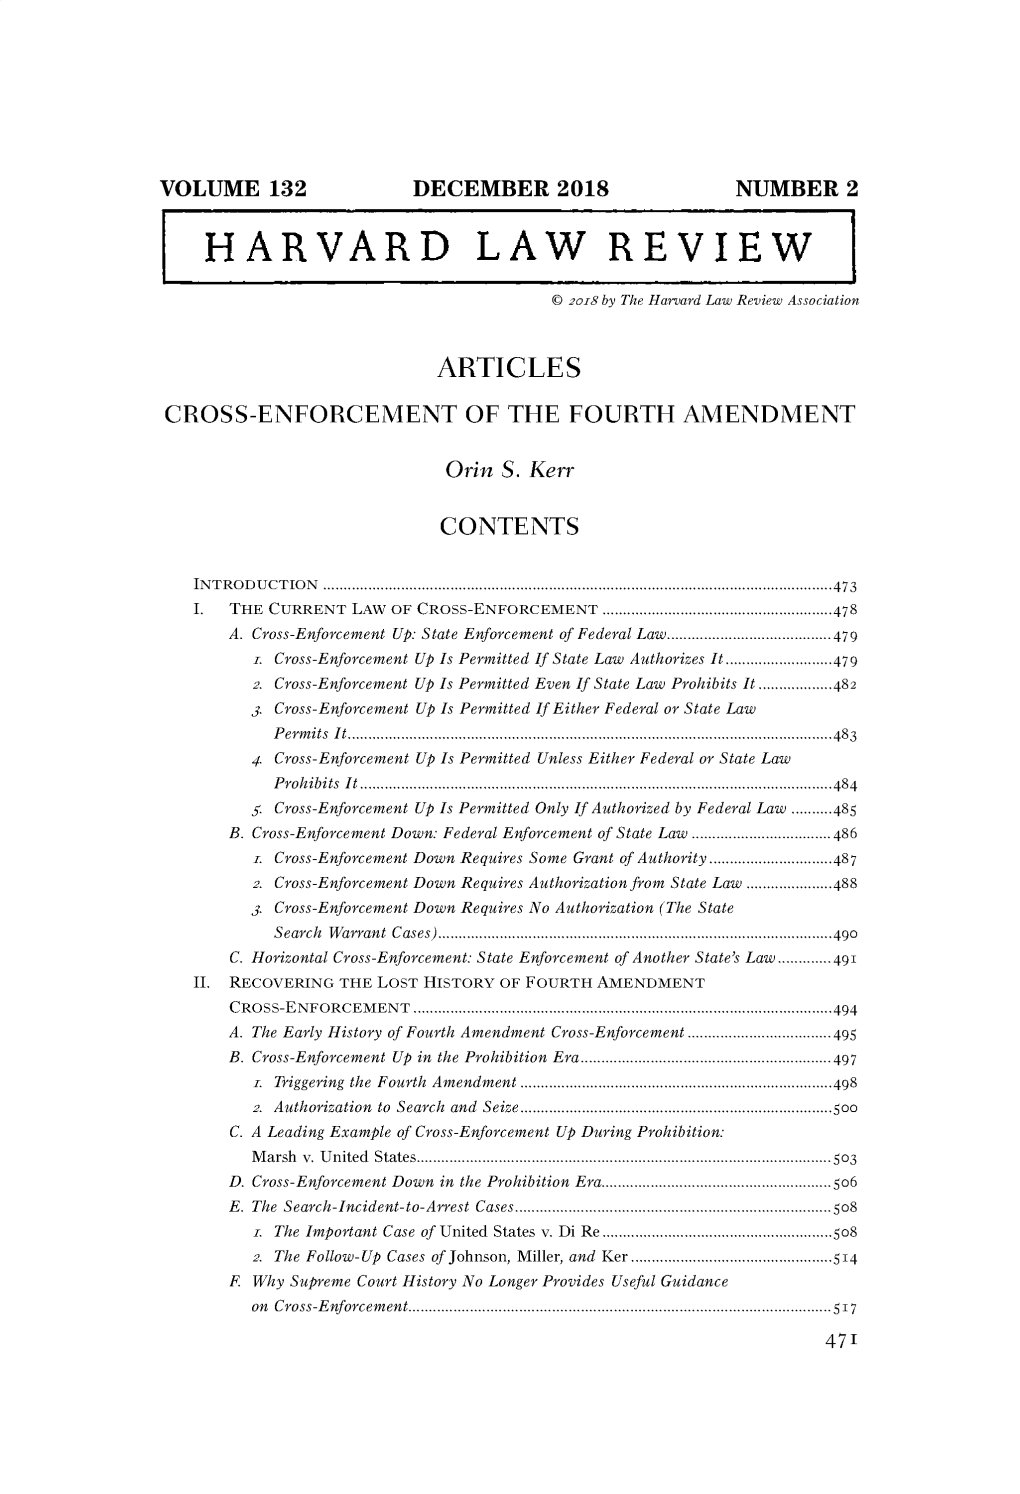 Harvard Law Review